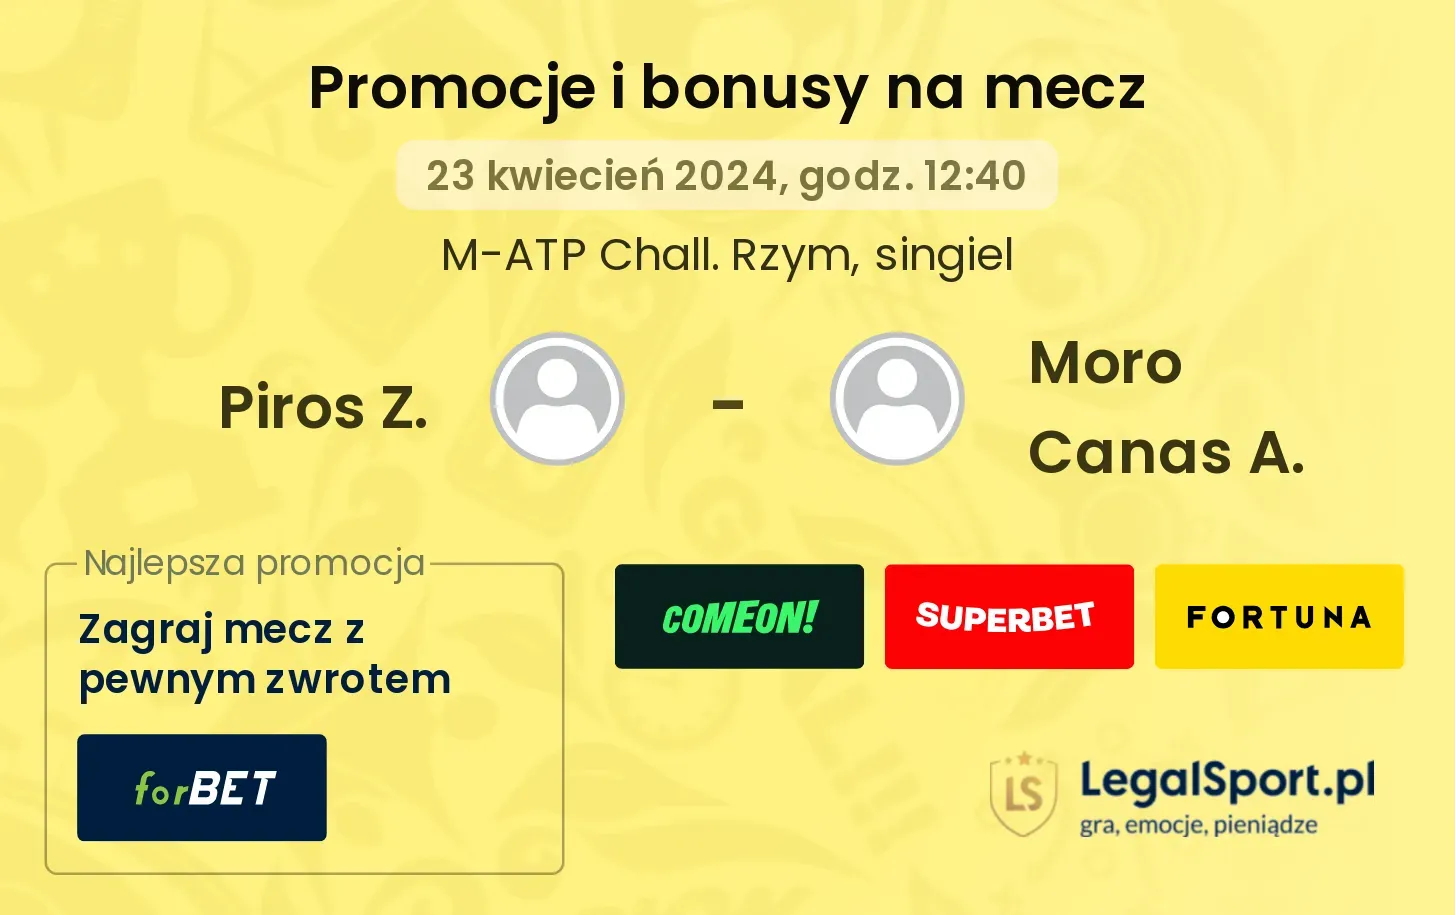 Piros Z. - Moro Canas A. promocje bonusy na mecz